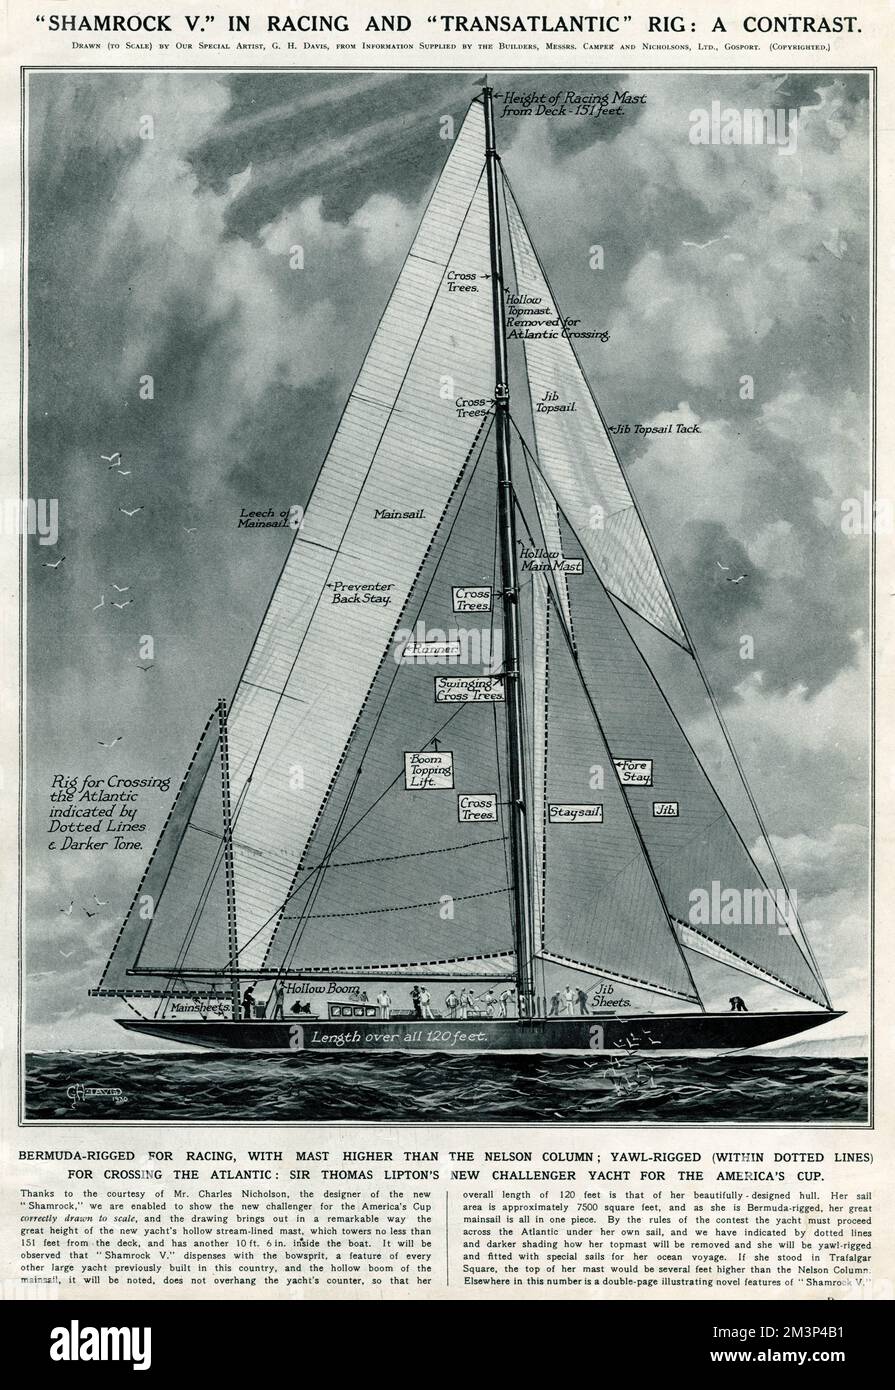 Un diagramme de G. H. Davis de Shamrock V, challenger de la coupe des Amériques britannique, montrant la différence entre la configuration du mât et des voiles pour différentes exigences de navigation. Avec le mât à pleine hauteur (plus haut que la colonne de Nelson), les Bermudes ont été truquées pour la course, et (dans les lignes pointillées) ont été rigées pour les passages à niveau de l'Atlantique. Appartenant à Sir Thomas Lipton, Shamrock V a été défait par l'entreprise de yacht américaine lors des courses de la coupe de l'Amérique. Date: 1930 Banque D'Images